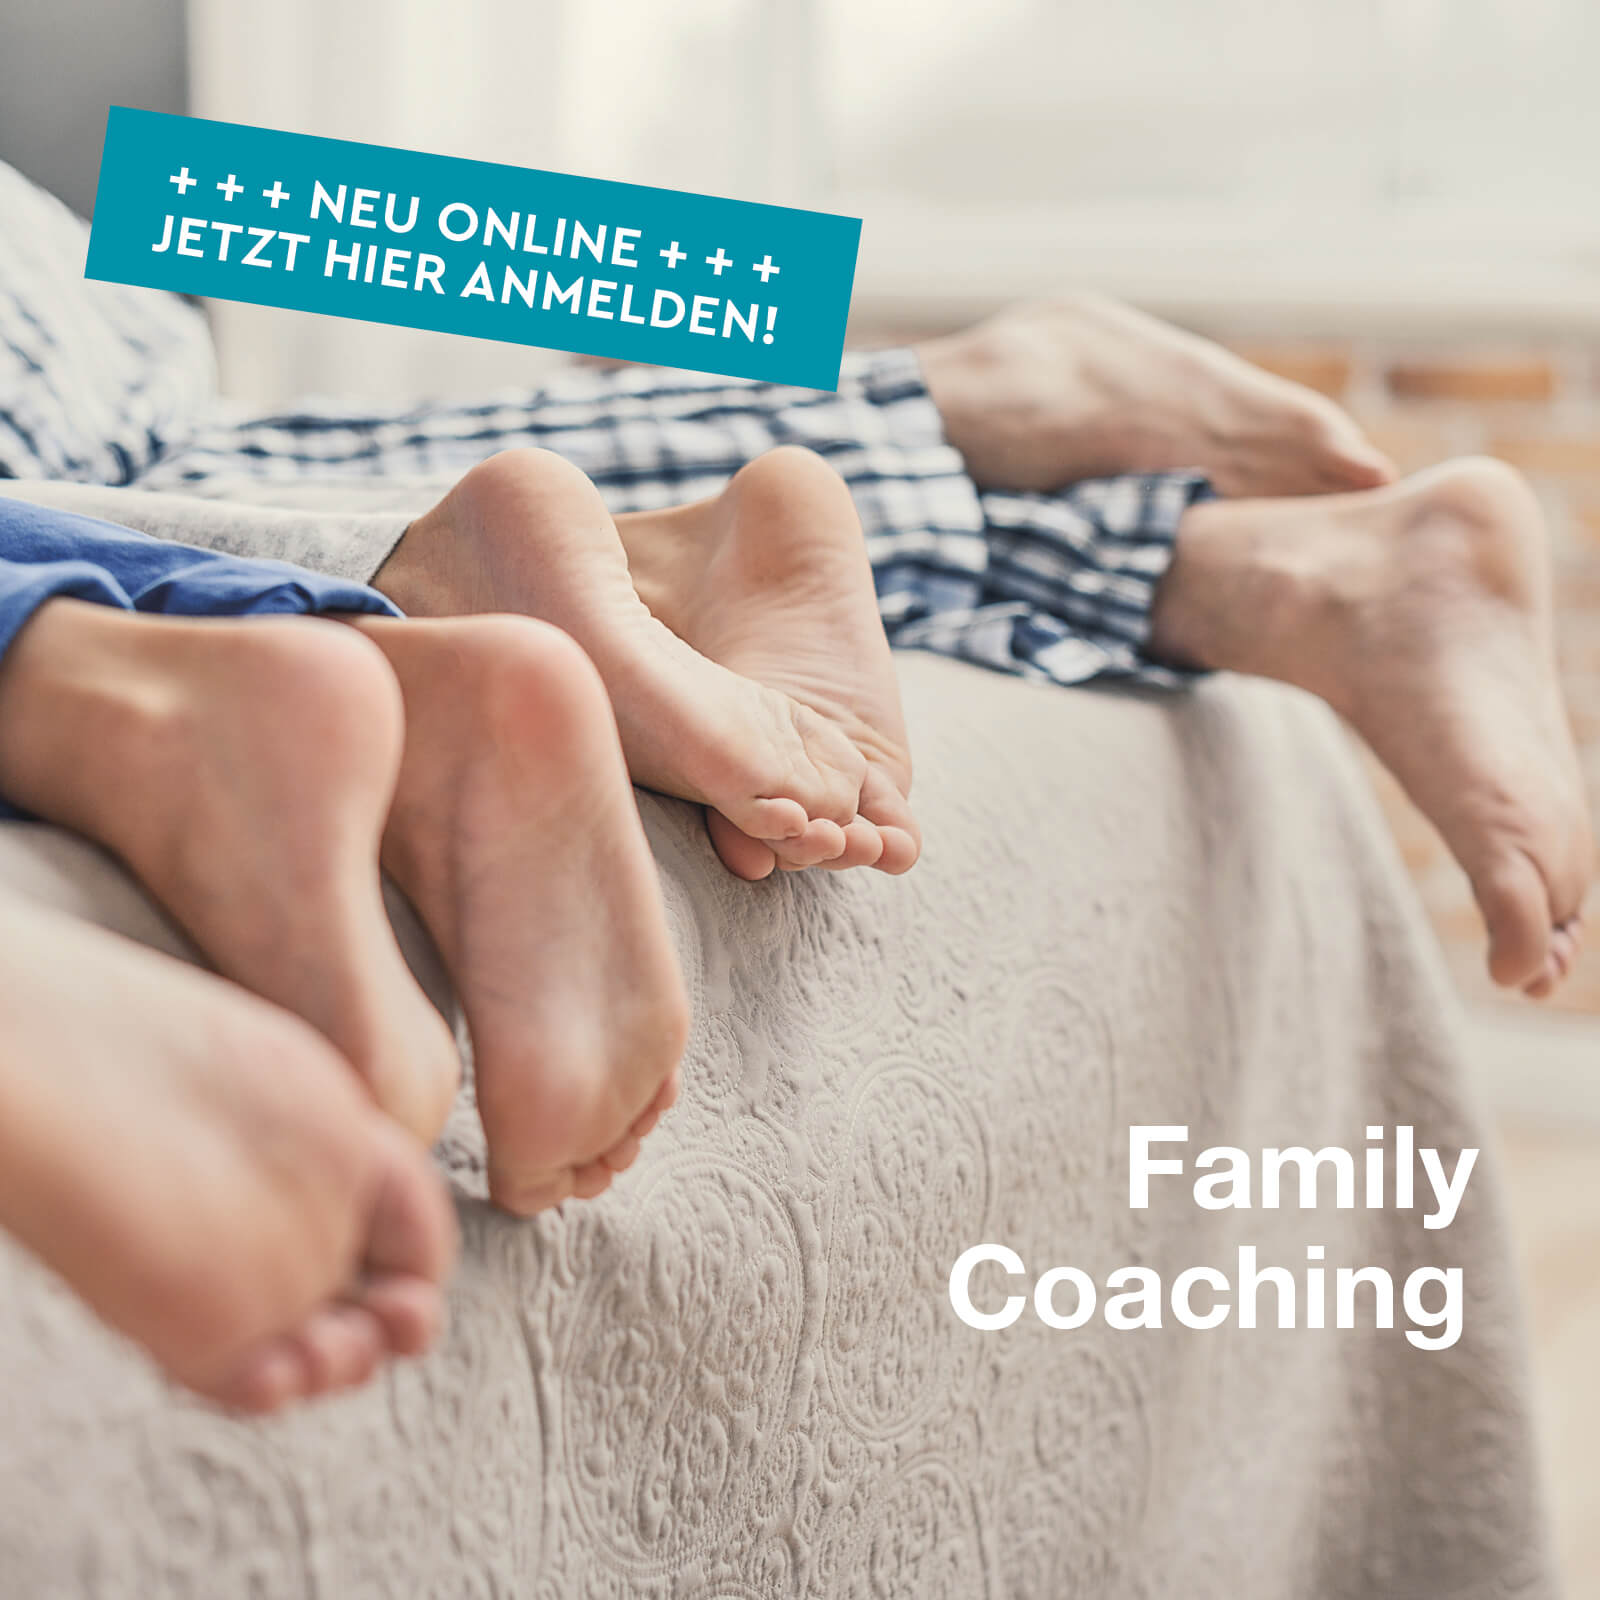 Eltern und Familien Coaching und Online Seminare bei der N4YK Family Academy jetzt buchen.